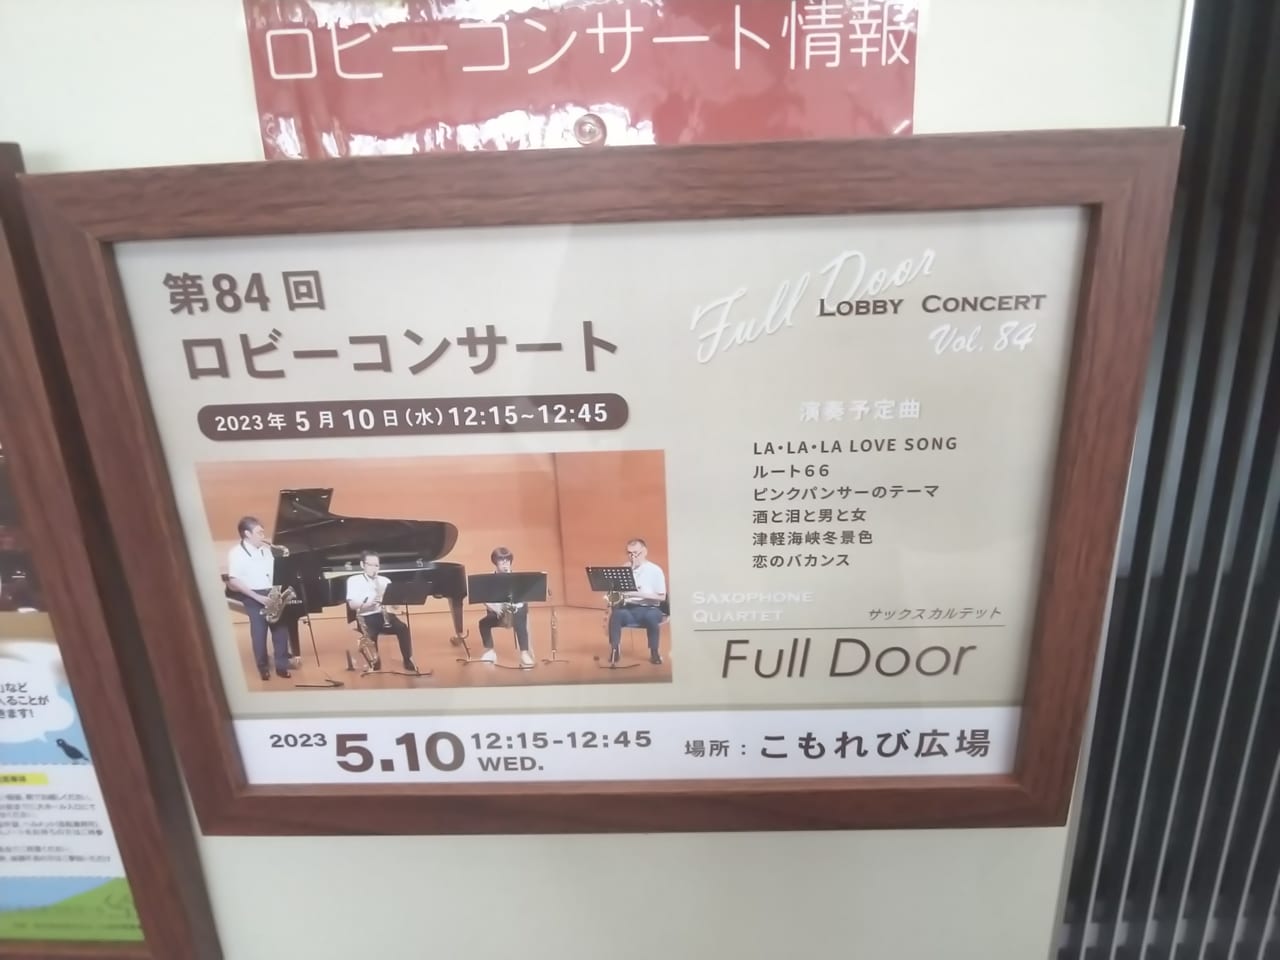 東広島芸術文化ホールくらら「第84回ロビーコンサート」のチラシ